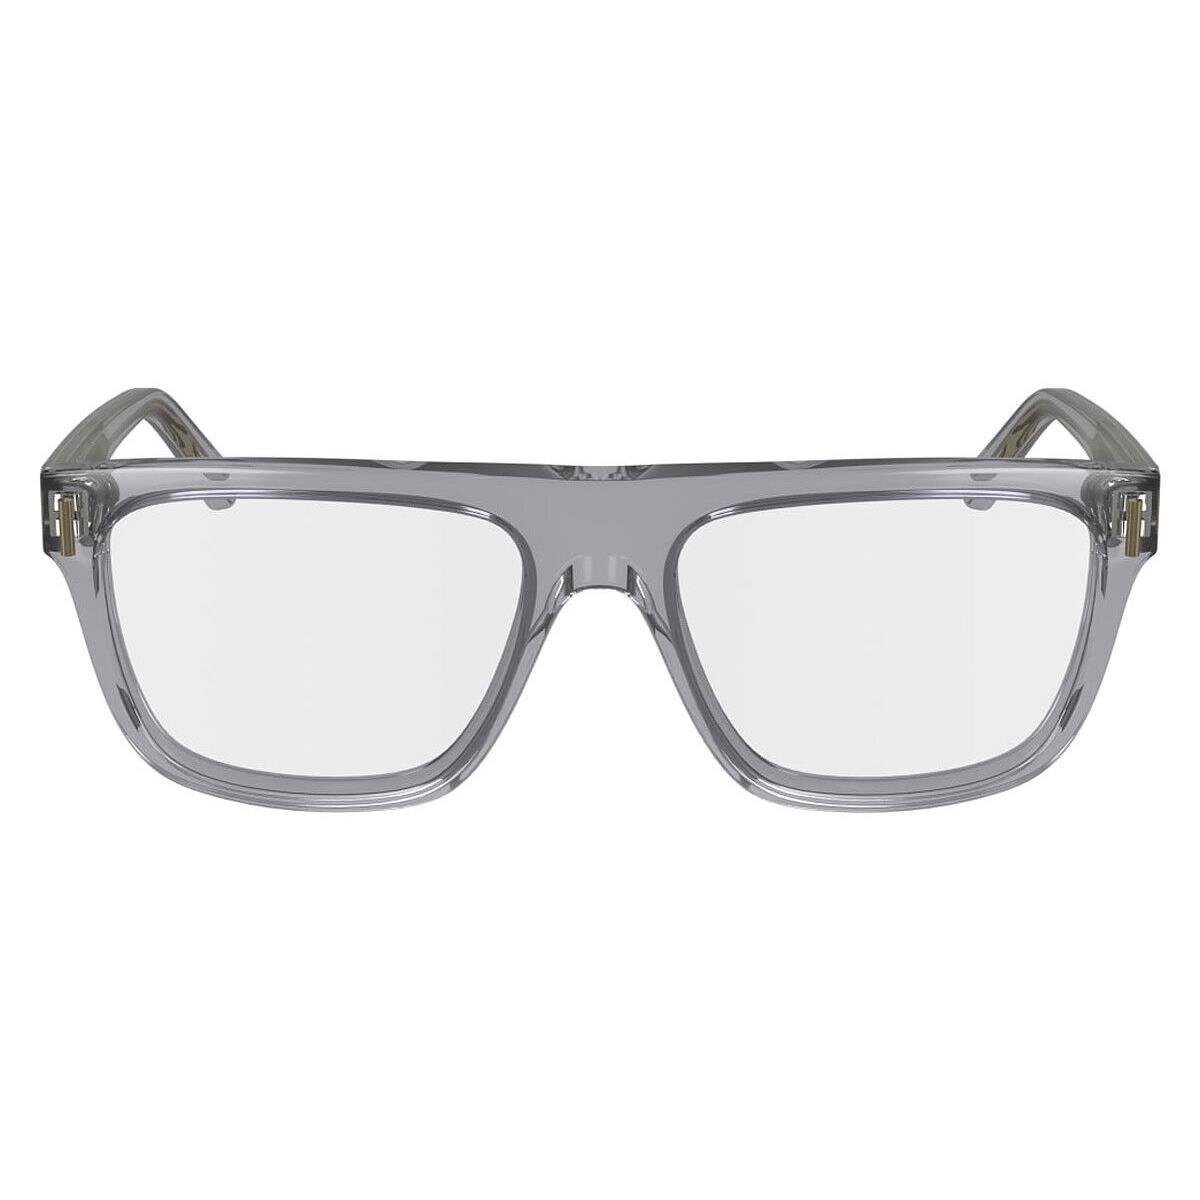 Salvatore Ferragamo SF2997 Eyeglasses Light Crystal Gray 55mm